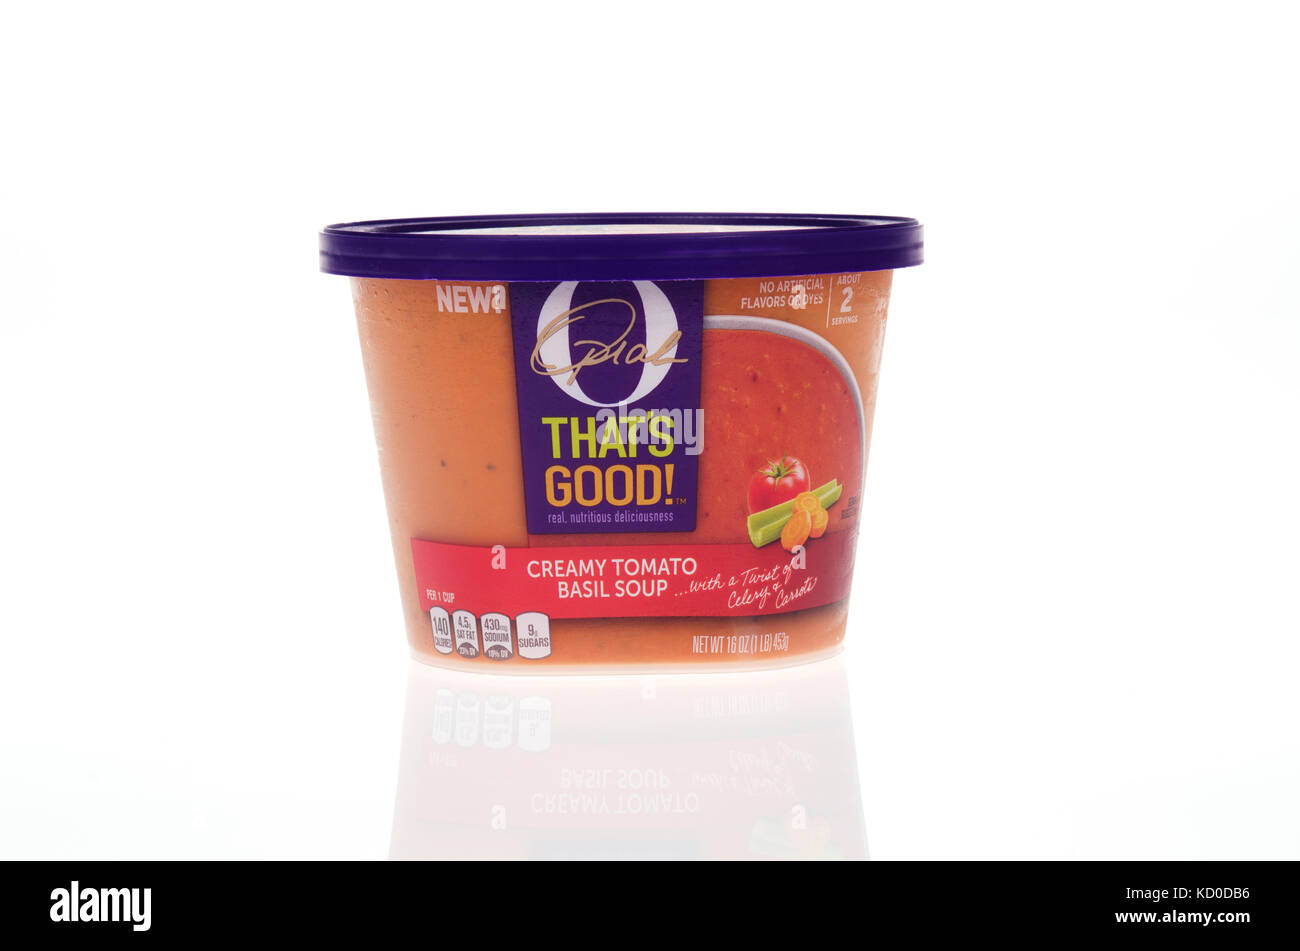 À Remous de Oprah Winfrey's O C'est une bonne soupe crème de tomates au basilic réfrigérés sur fond blanc, USA Banque D'Images